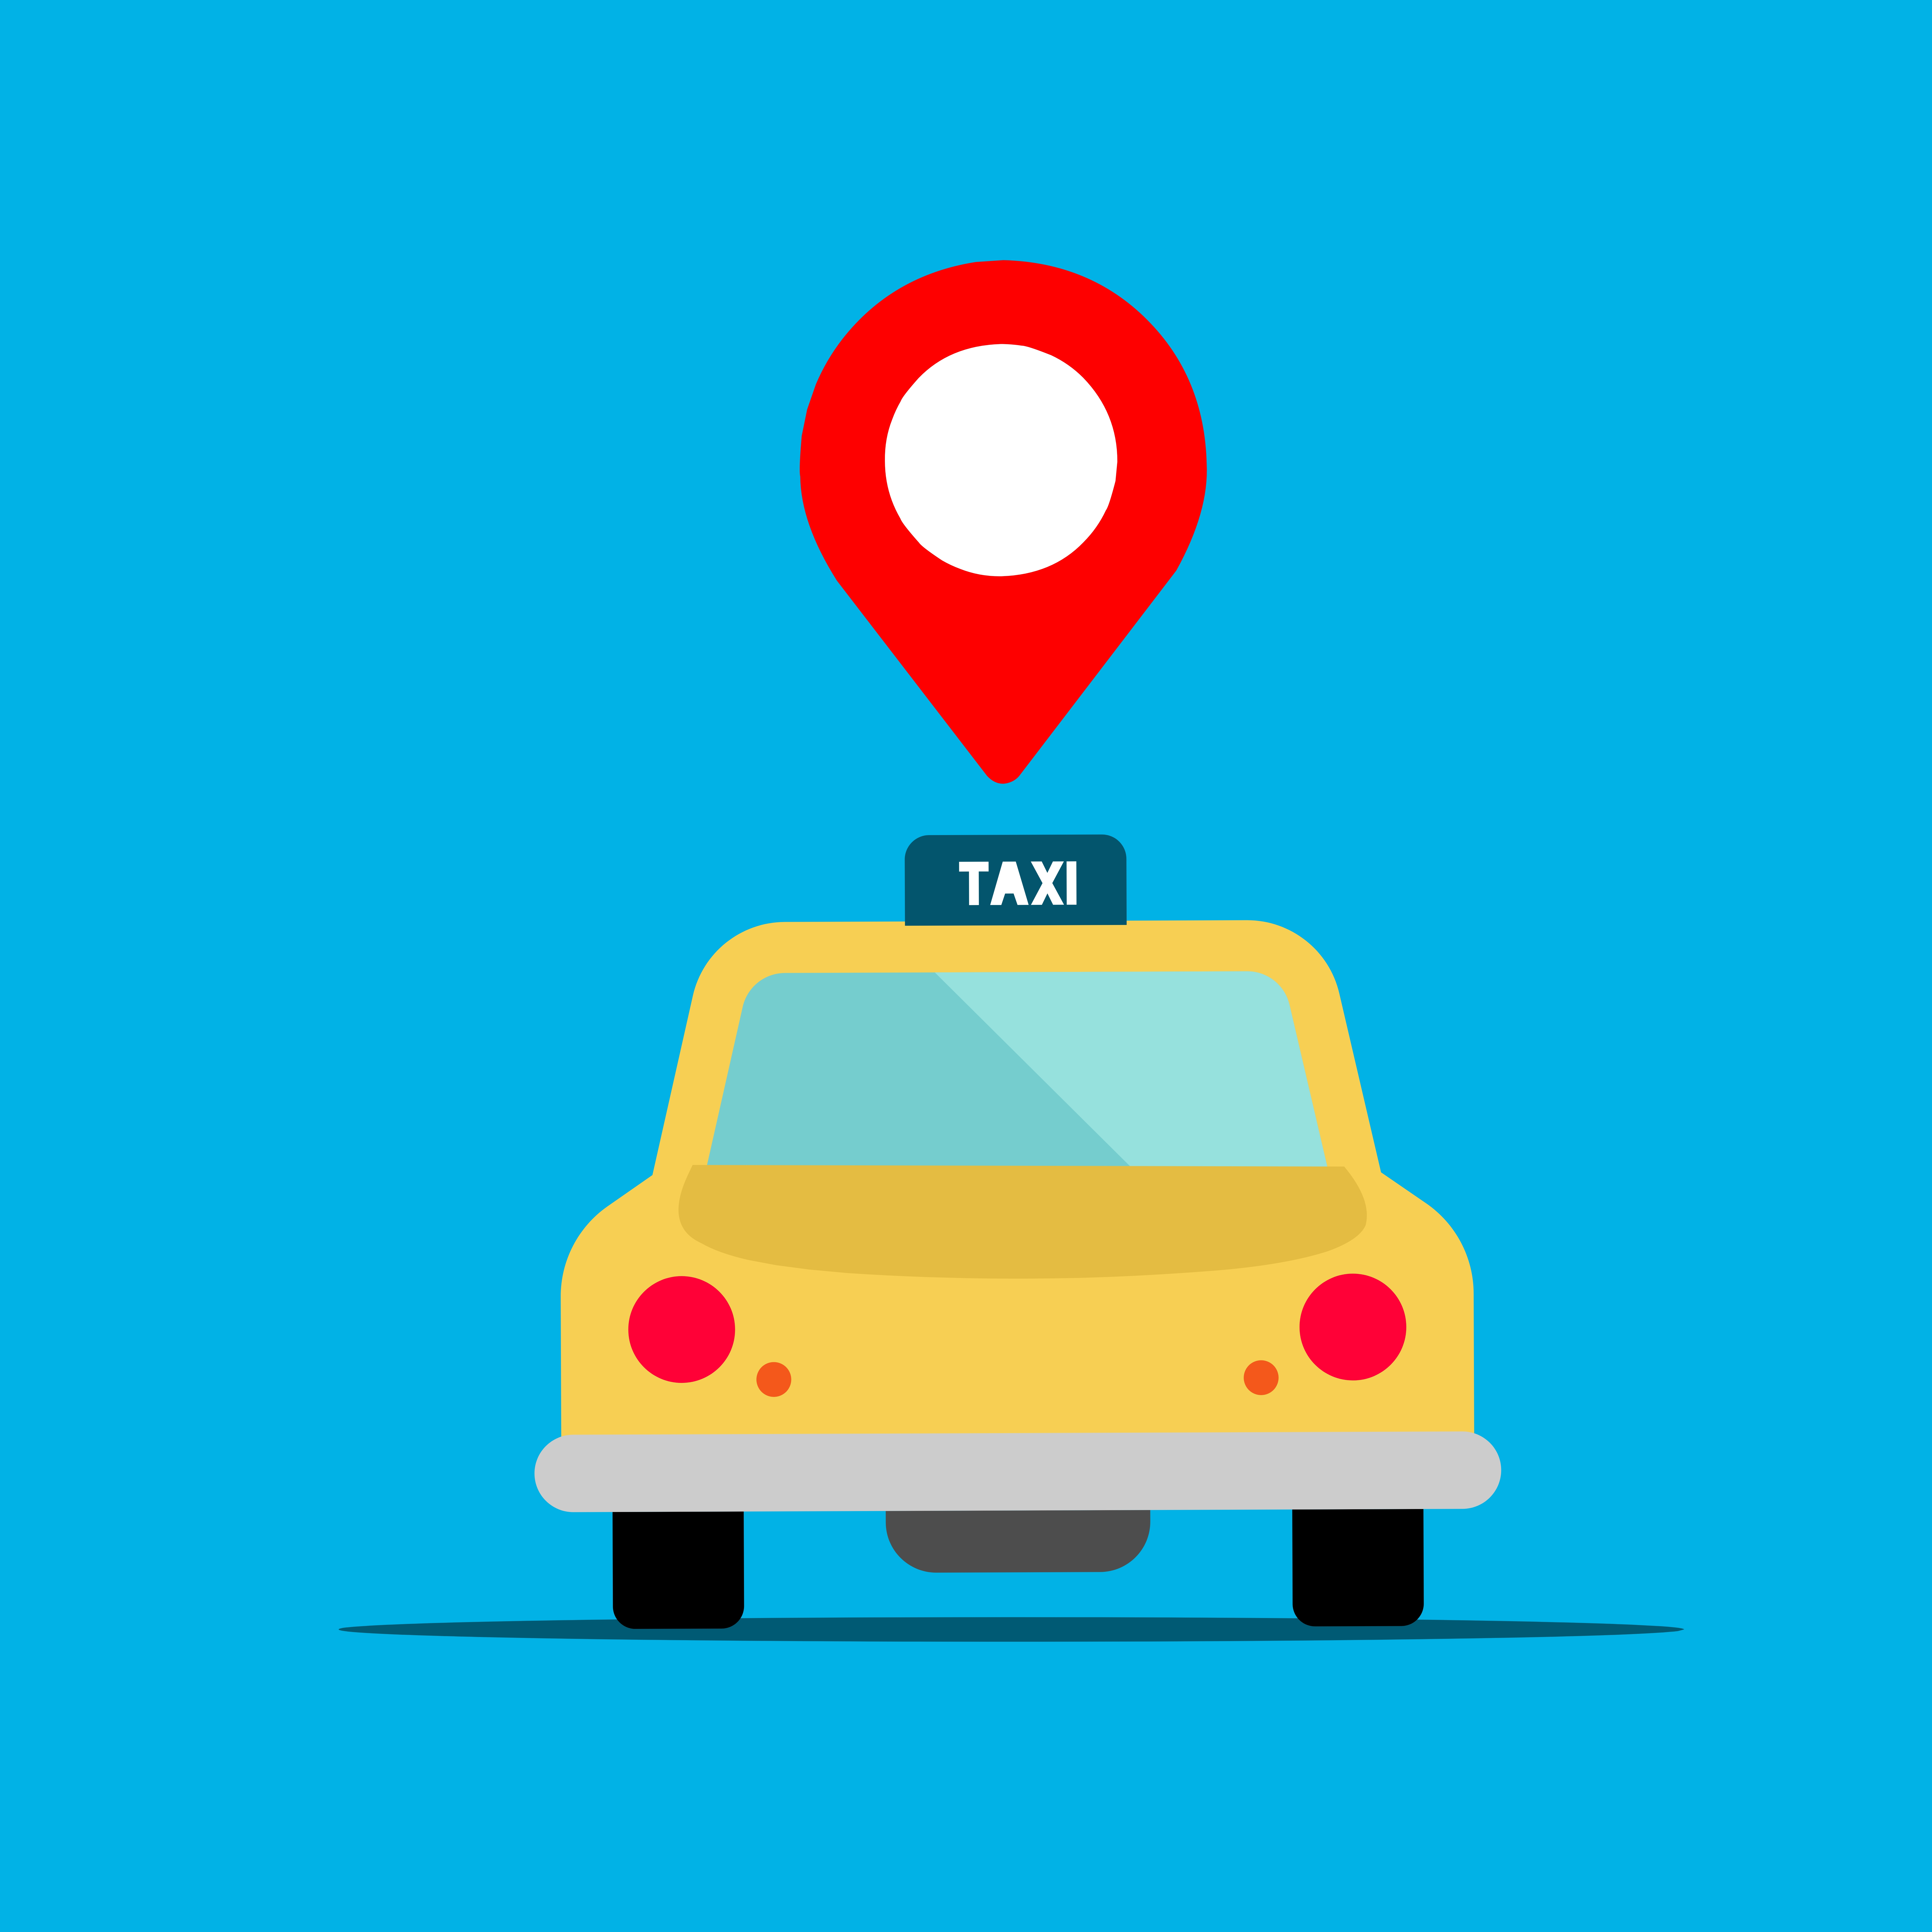 Taxi service graphic design